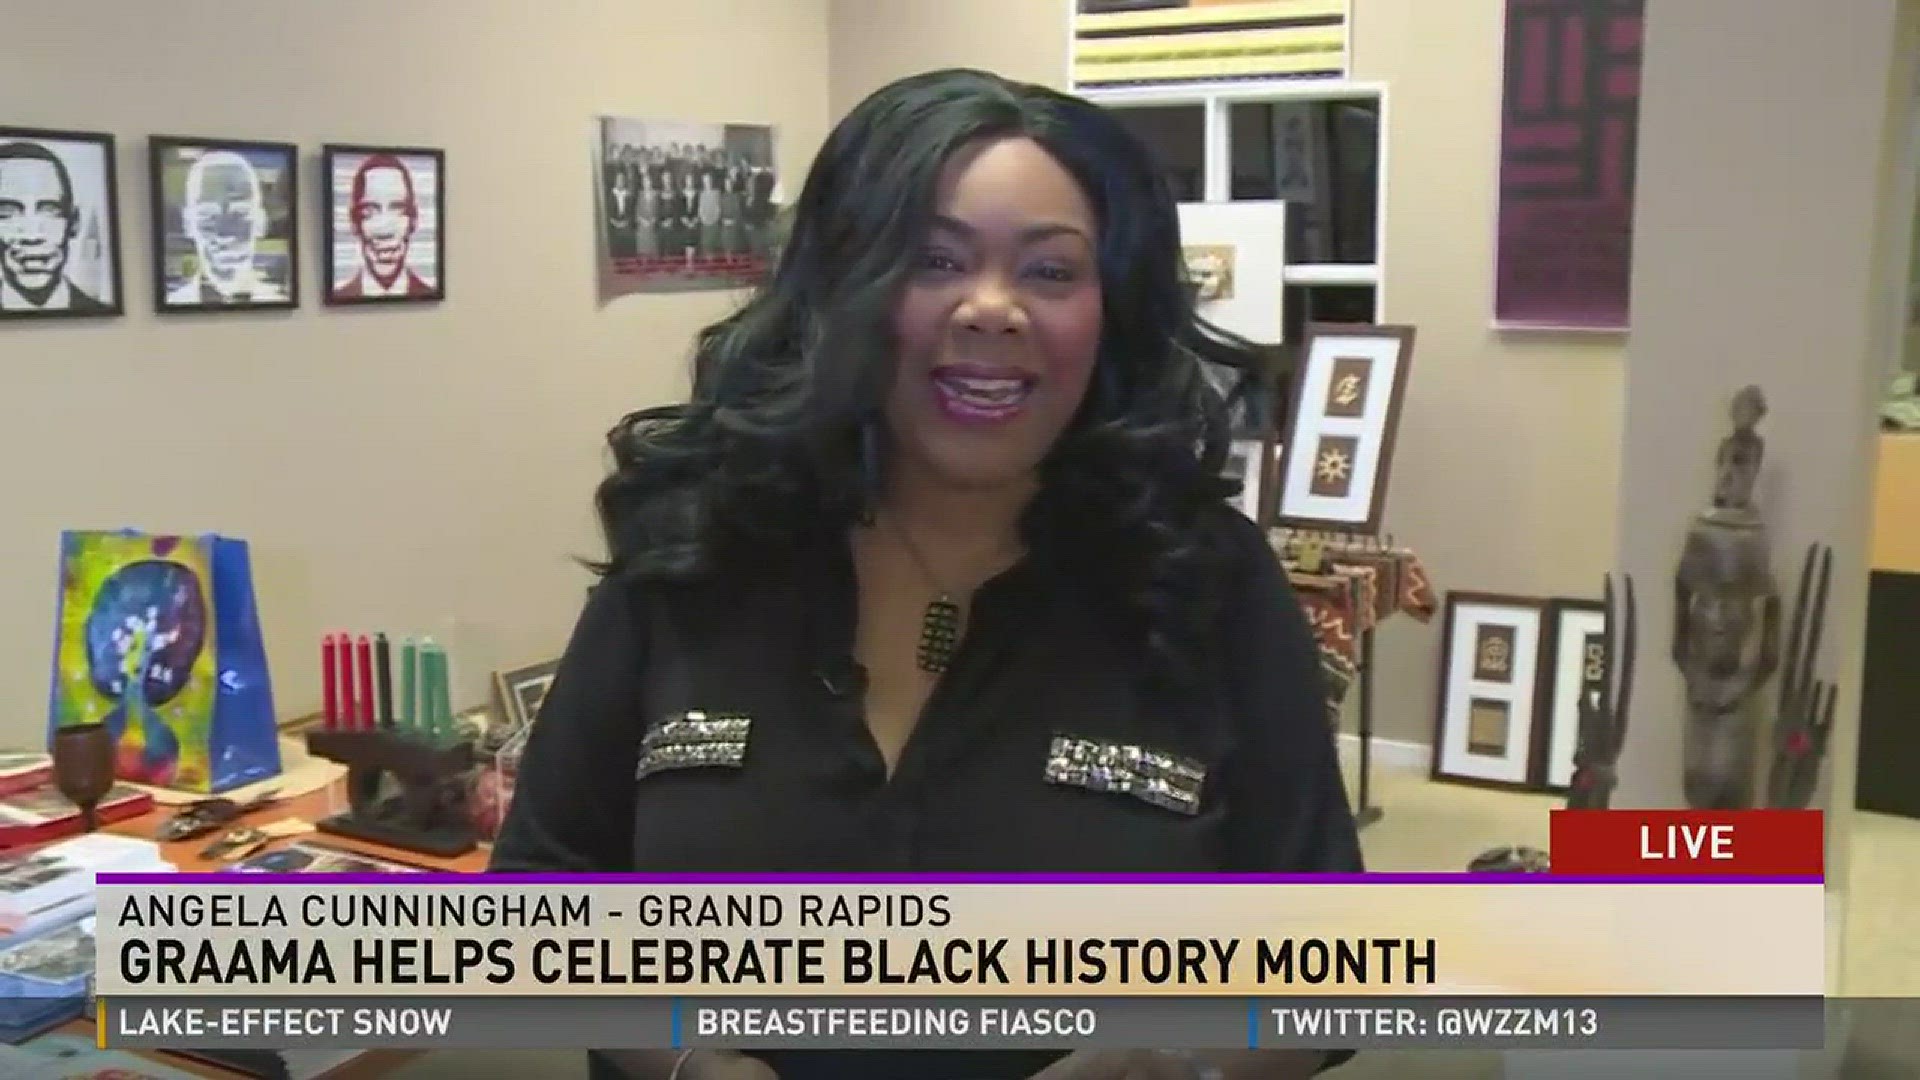 GRAAMA helps celebrate Black History Month